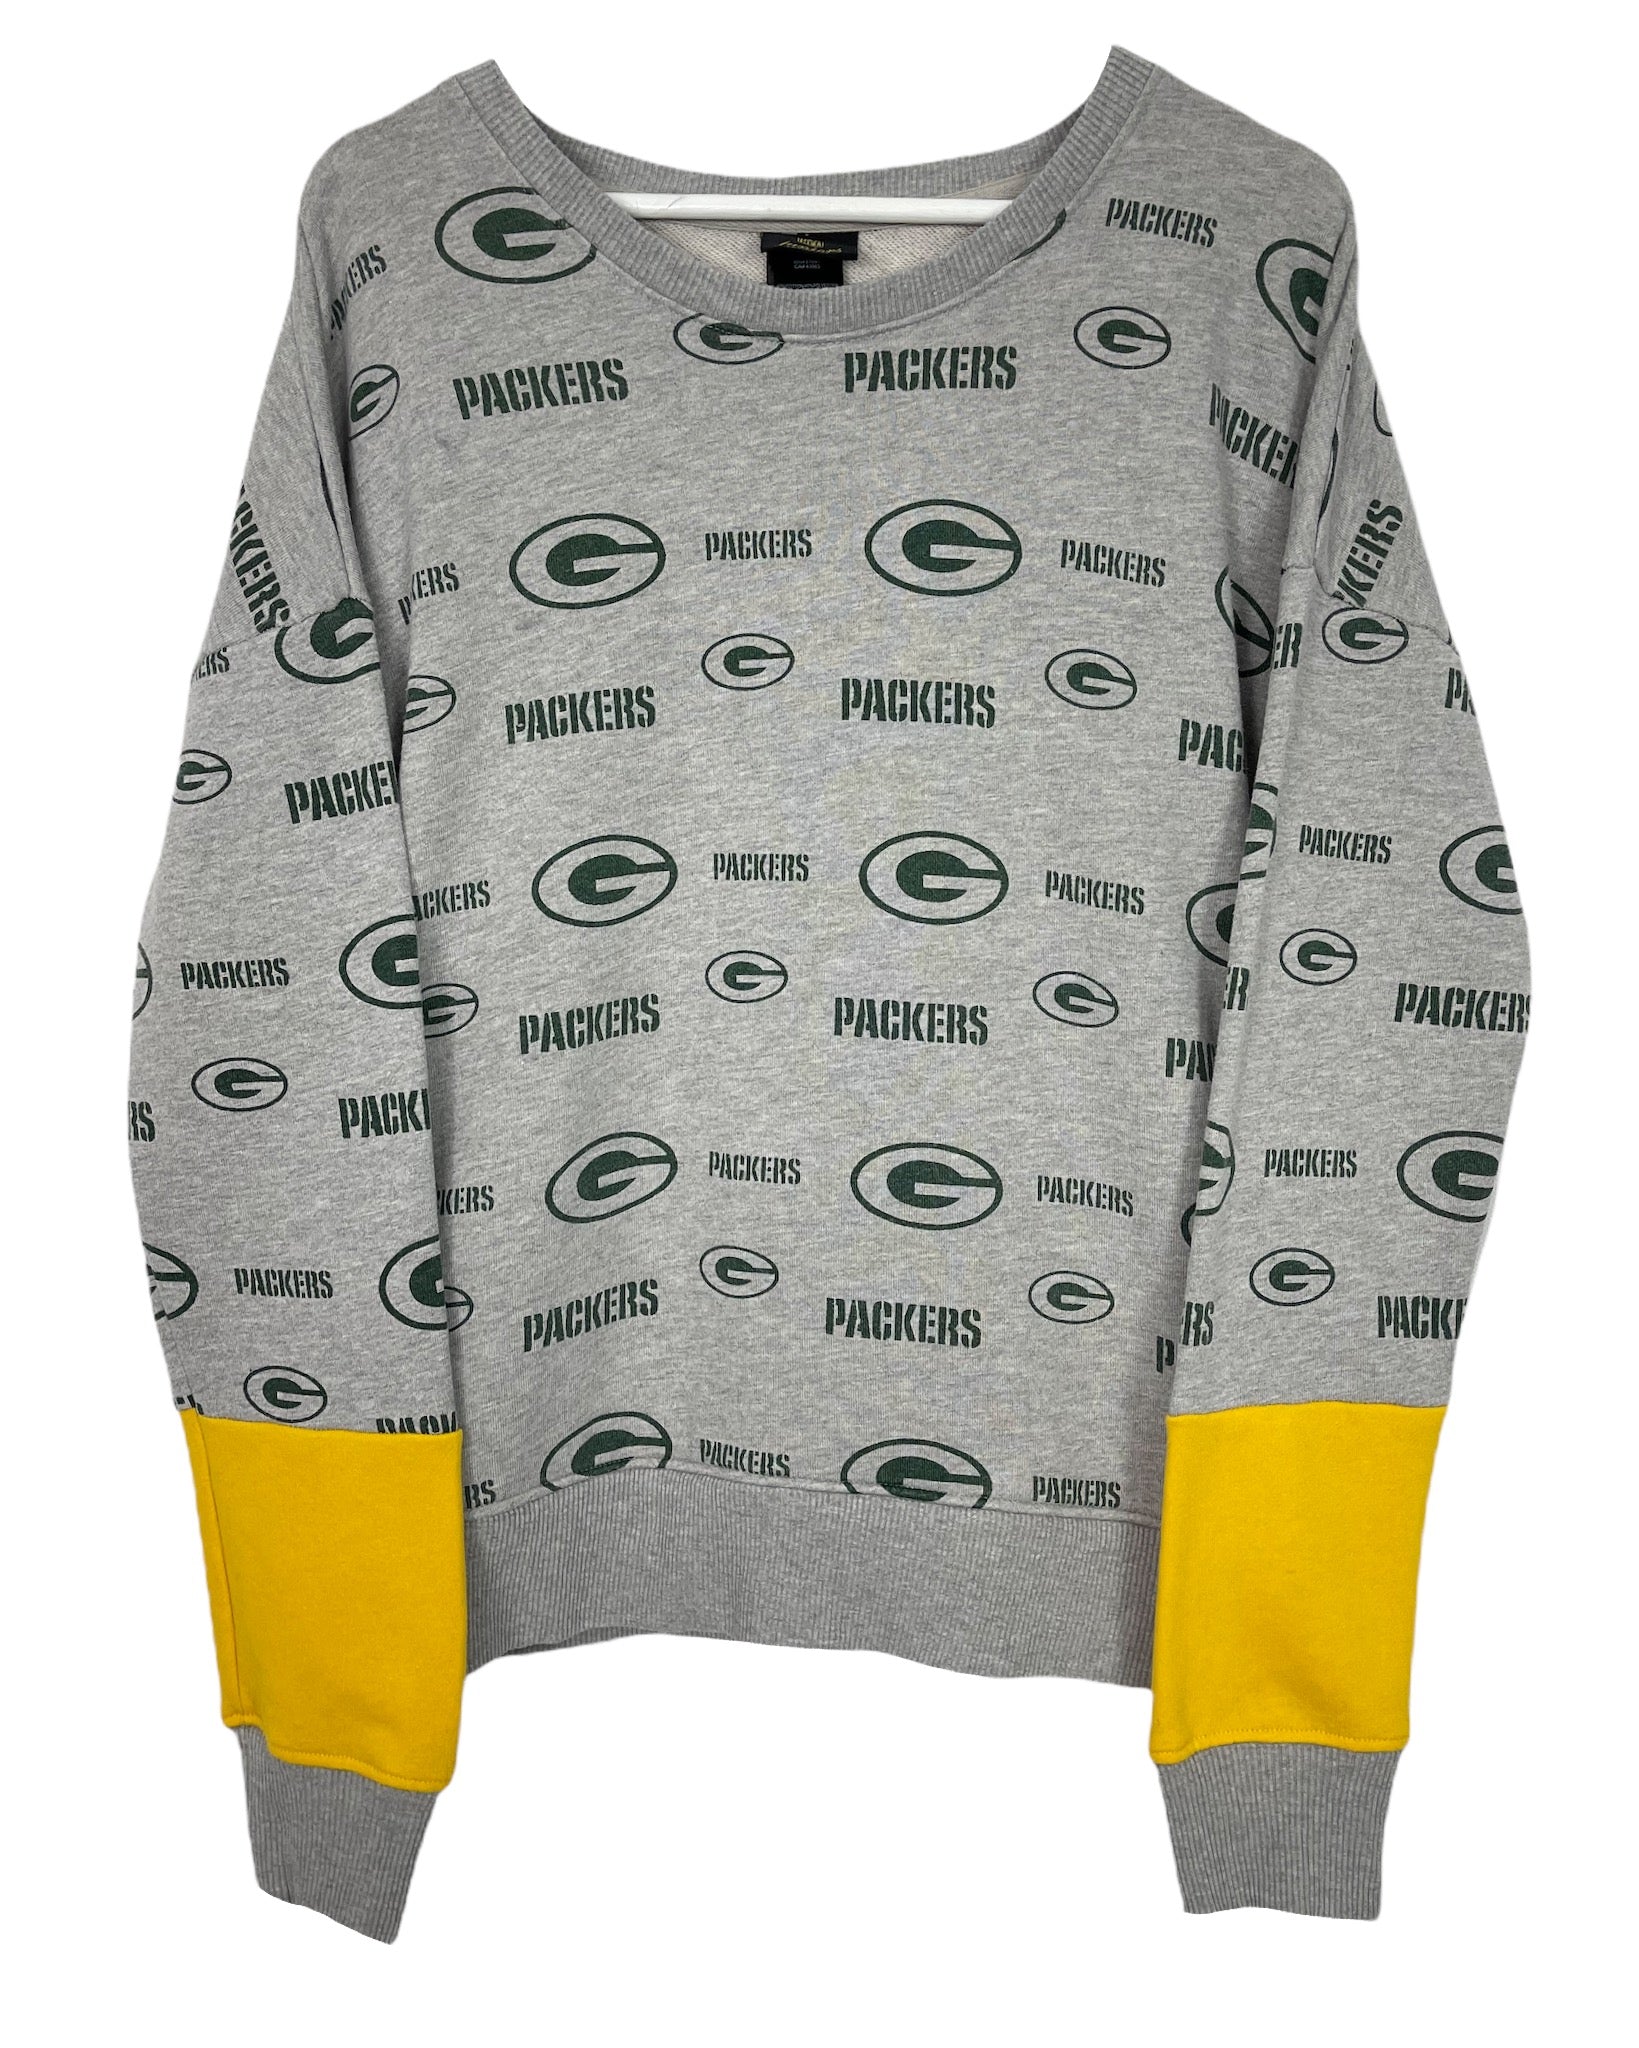  Sweatshirt NFL Sweat - Green Bay Packers - XS - PLOMOSTORE